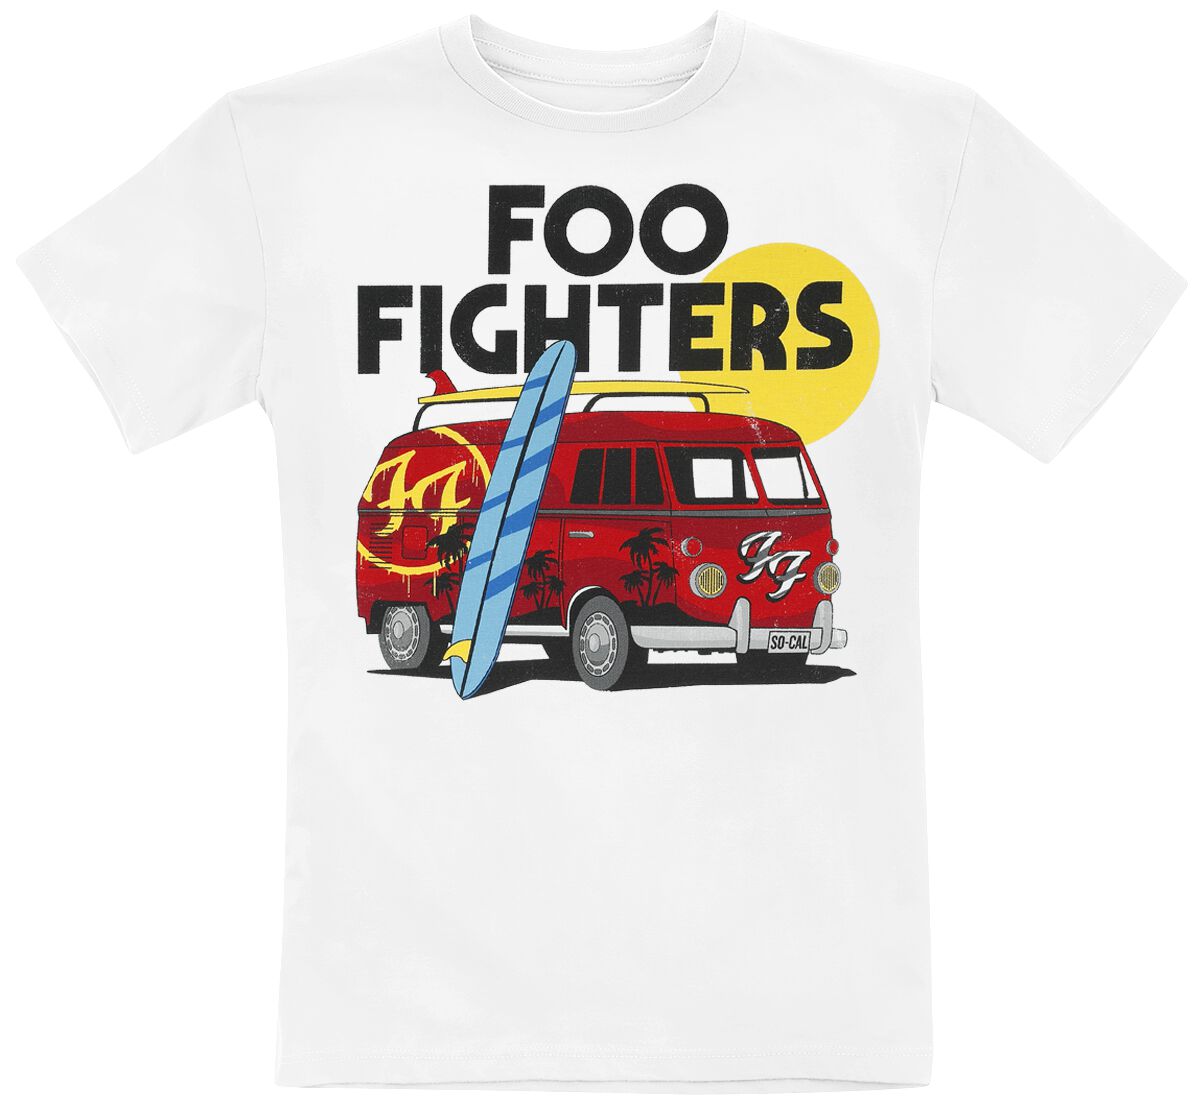 Foo Fighters T-Shirt für Kleinkinder - Kids  - Van - für Mädchen & Jungen - weiß  - Lizenziertes Merchandise!